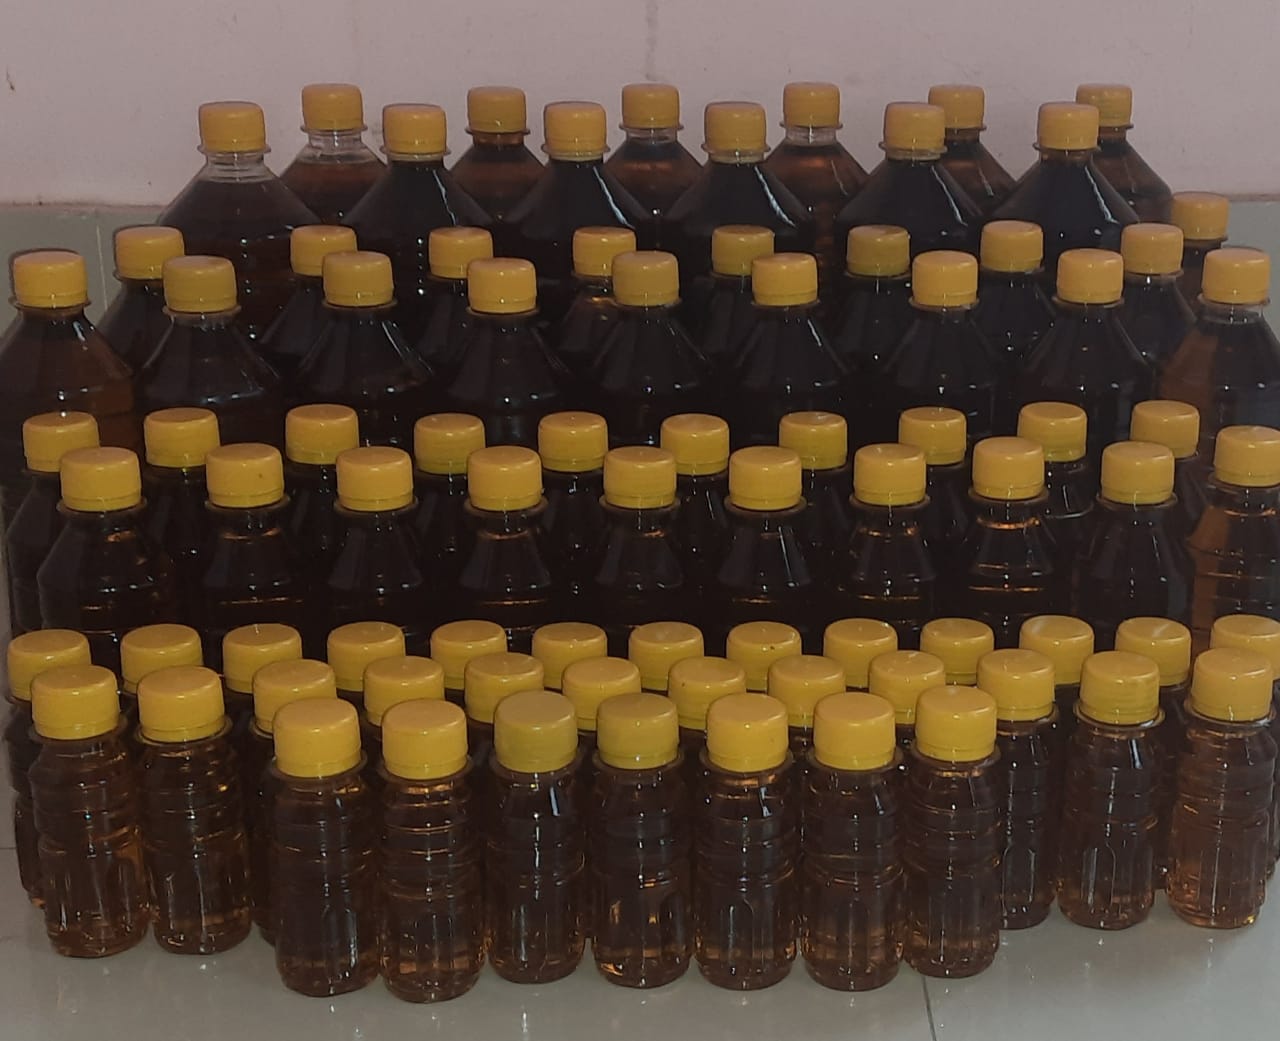 Mustard Oil (সরিষার তেল)